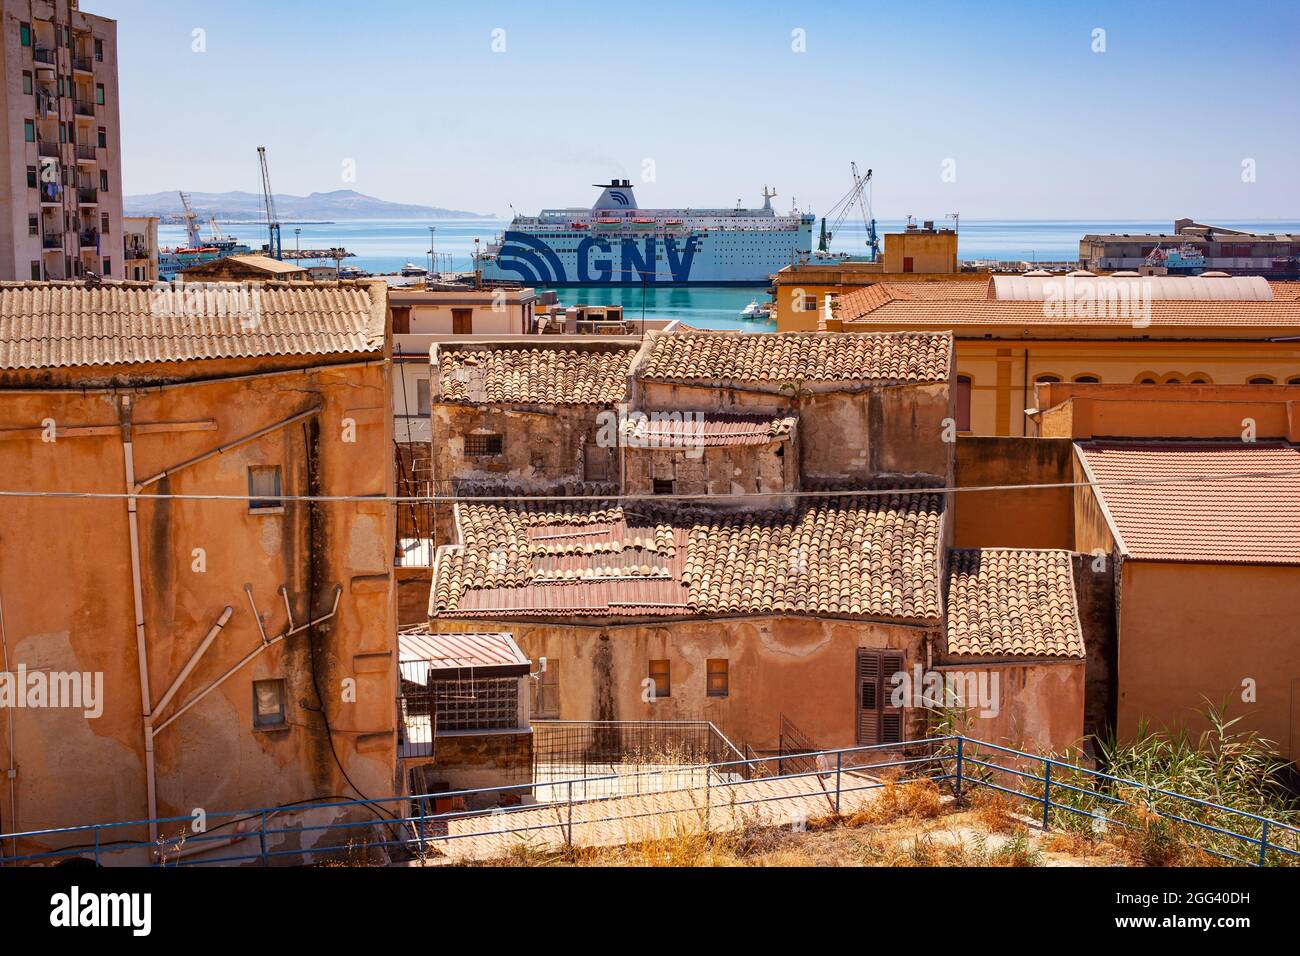 Porto Empedocle, Italia - Luglio 22: Vista della nave di quarantena GNV Allegra parcheggiata nel molo di porto Empedocle il 22 Luglio 2021 Foto Stock